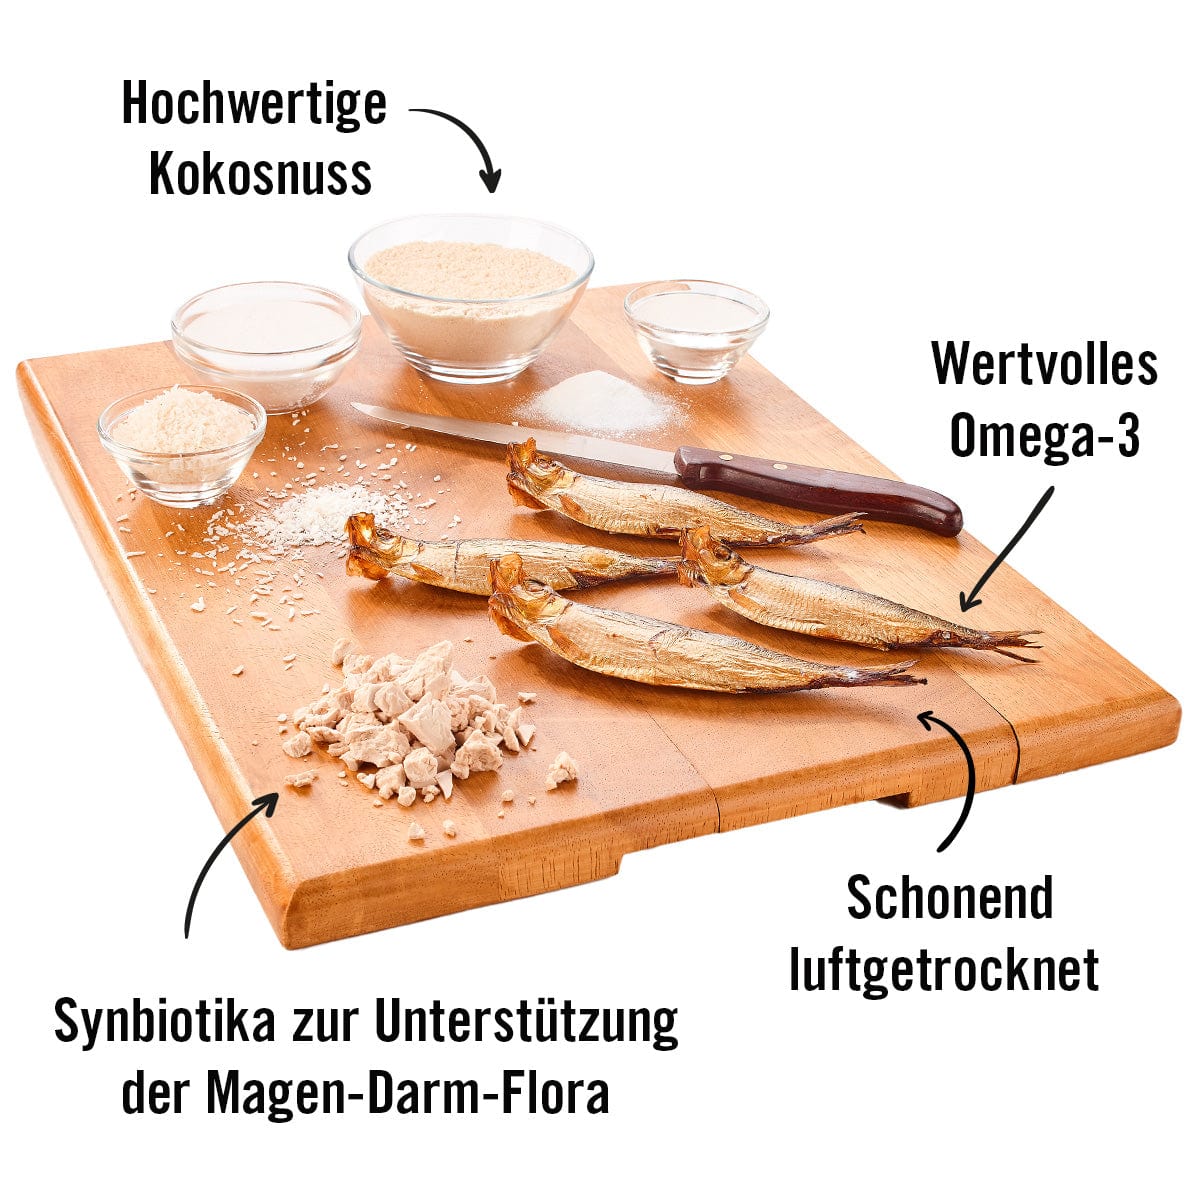 Holzbrett mit den Hauptzutaten für Bäuchlein: Kokosnuss, Sprotte mit Omega 3 und Synbiotika